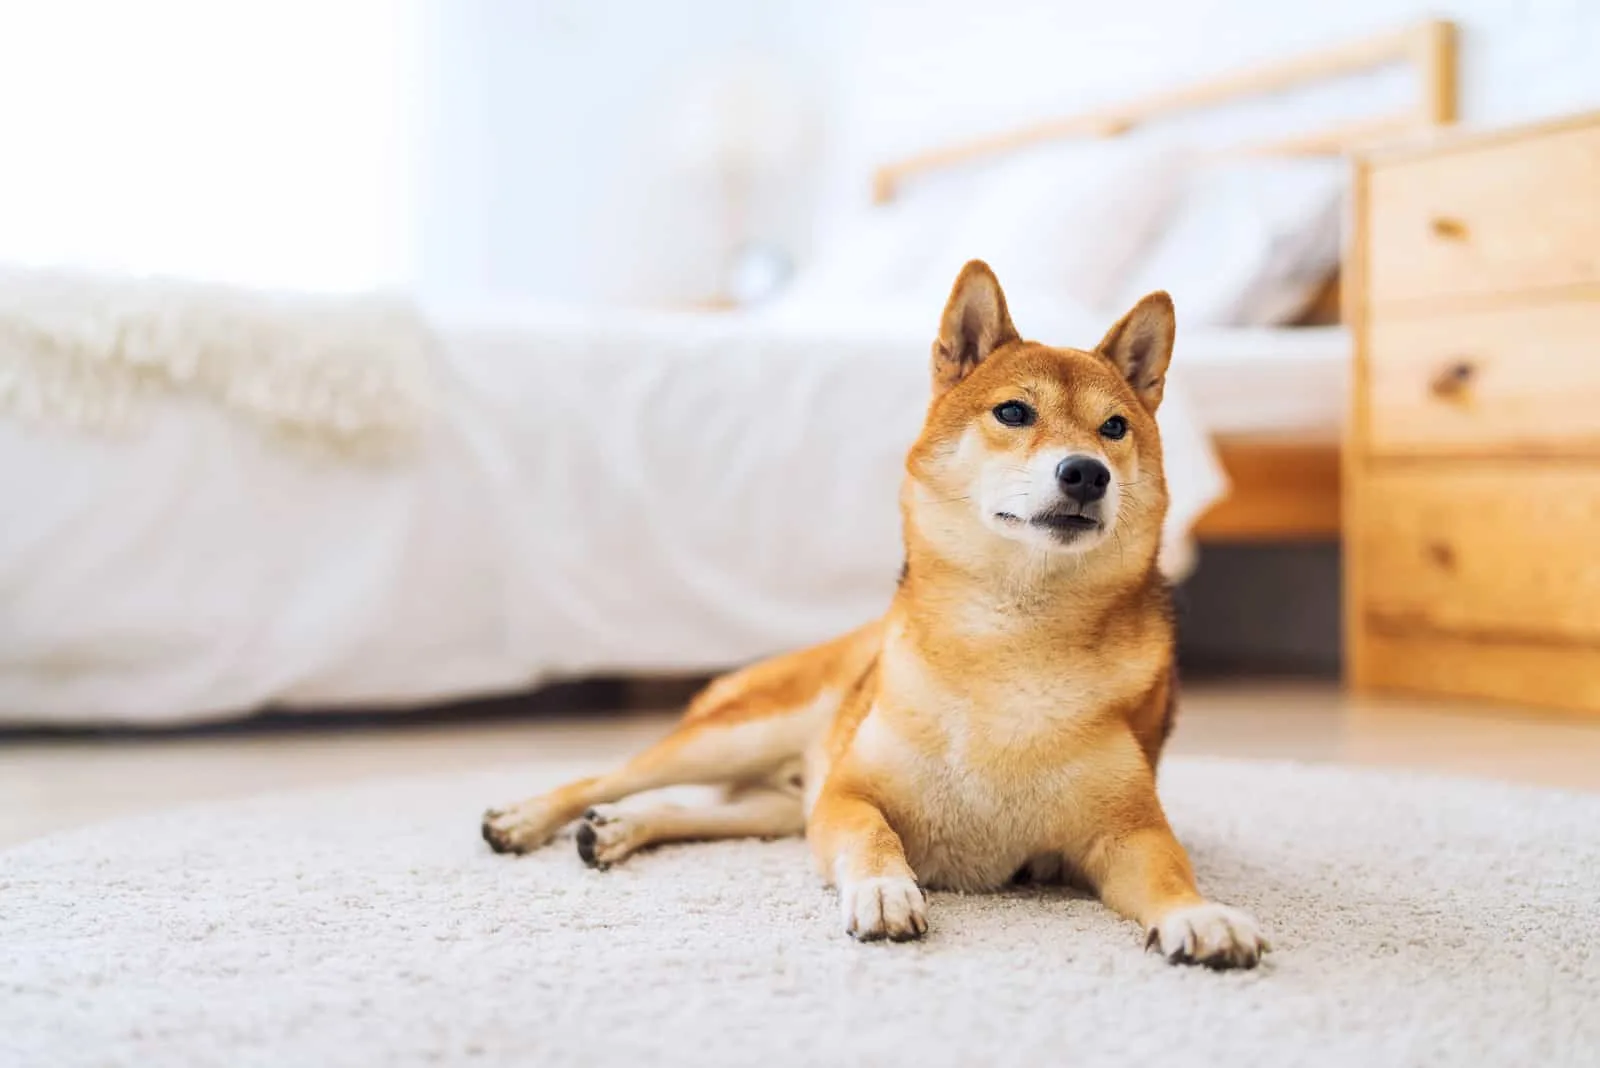 Japanese Shiba Inu dog in a carpet in bedroom